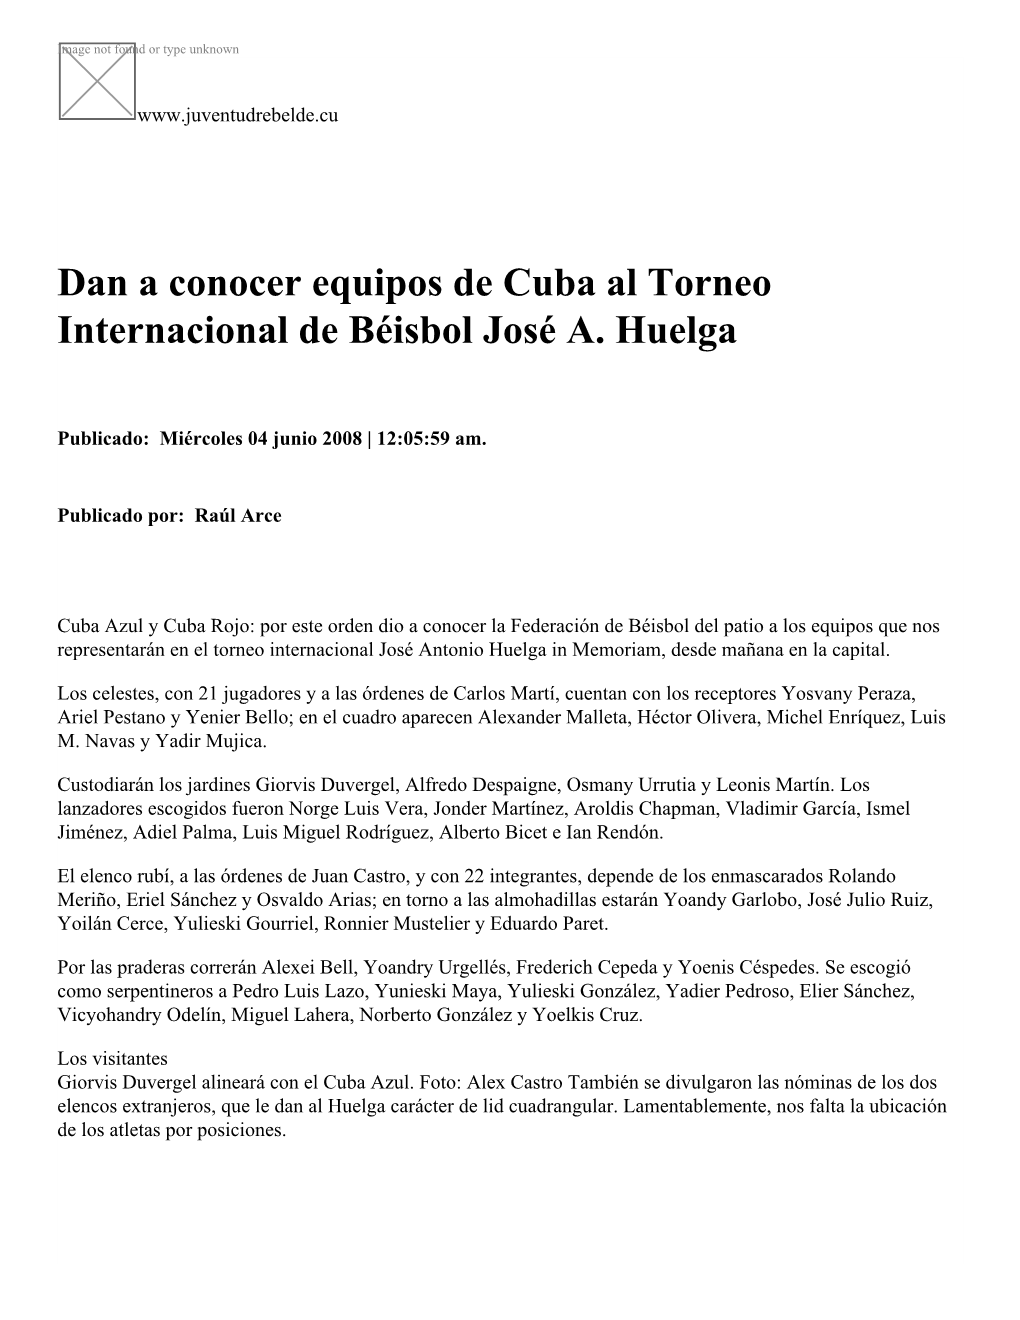 Dan a Conocer Equipos De Cuba Al Torneo Internacional De Béisbol José A